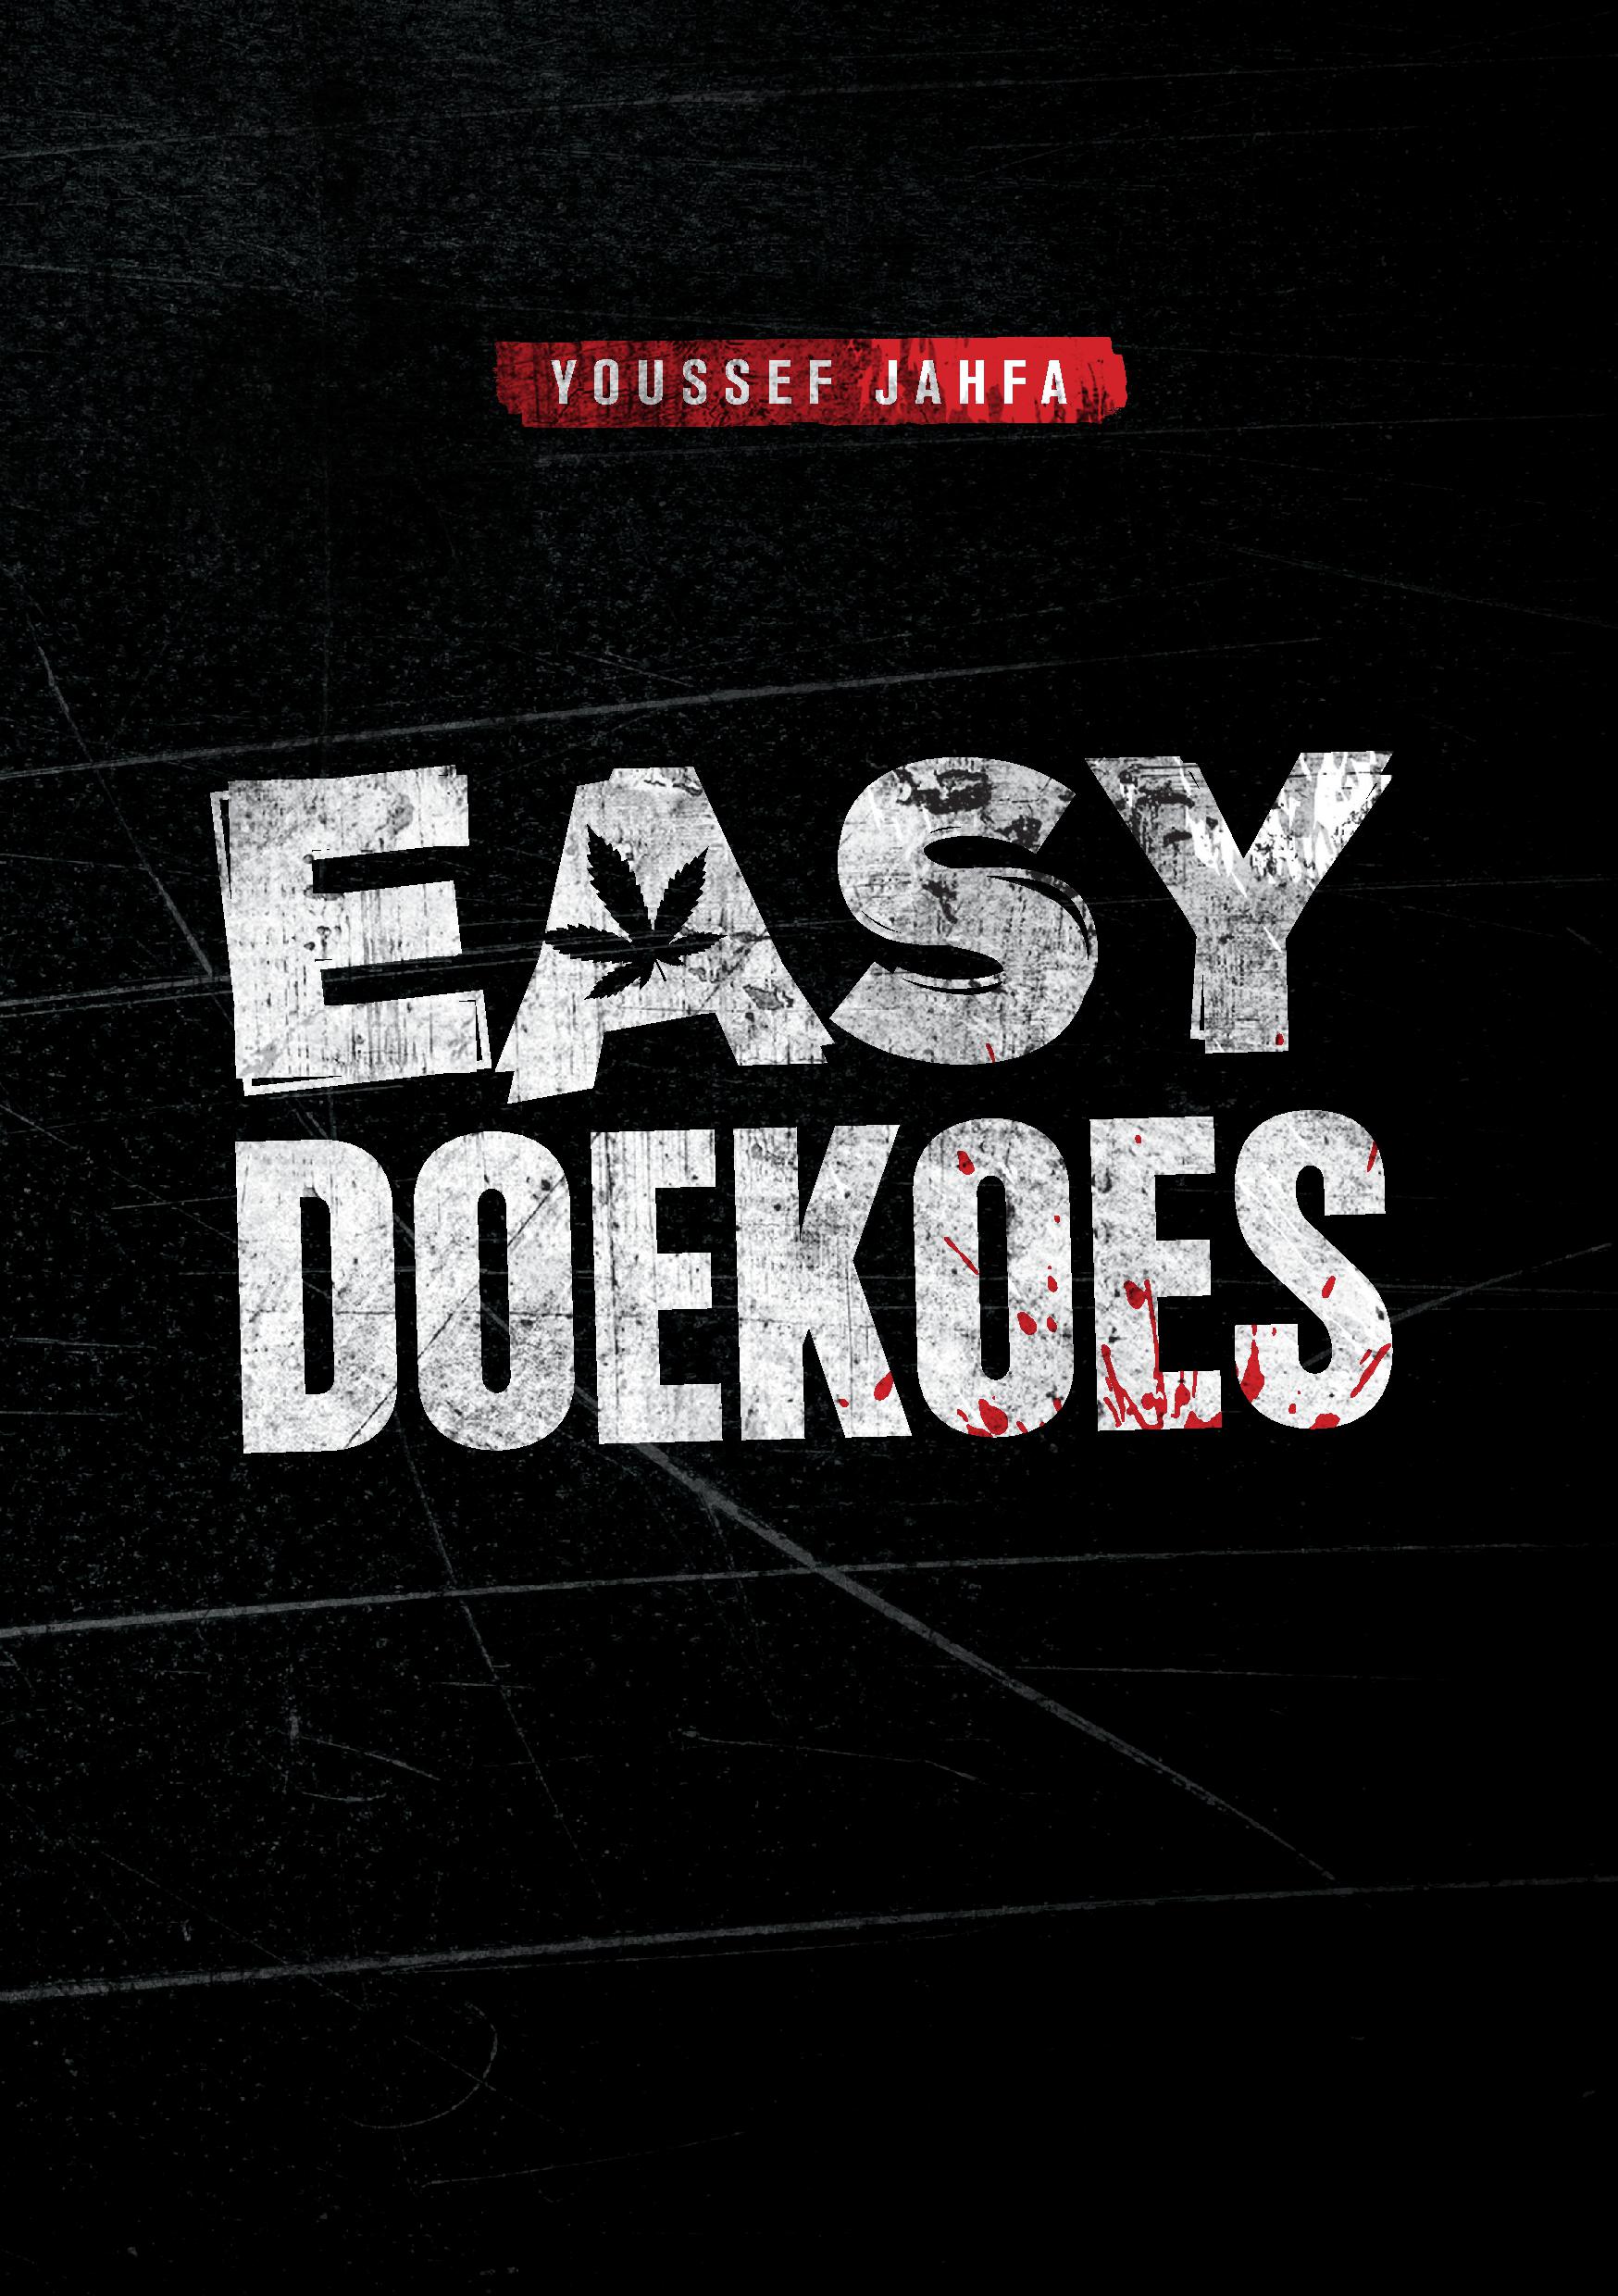 Easy Doekoes